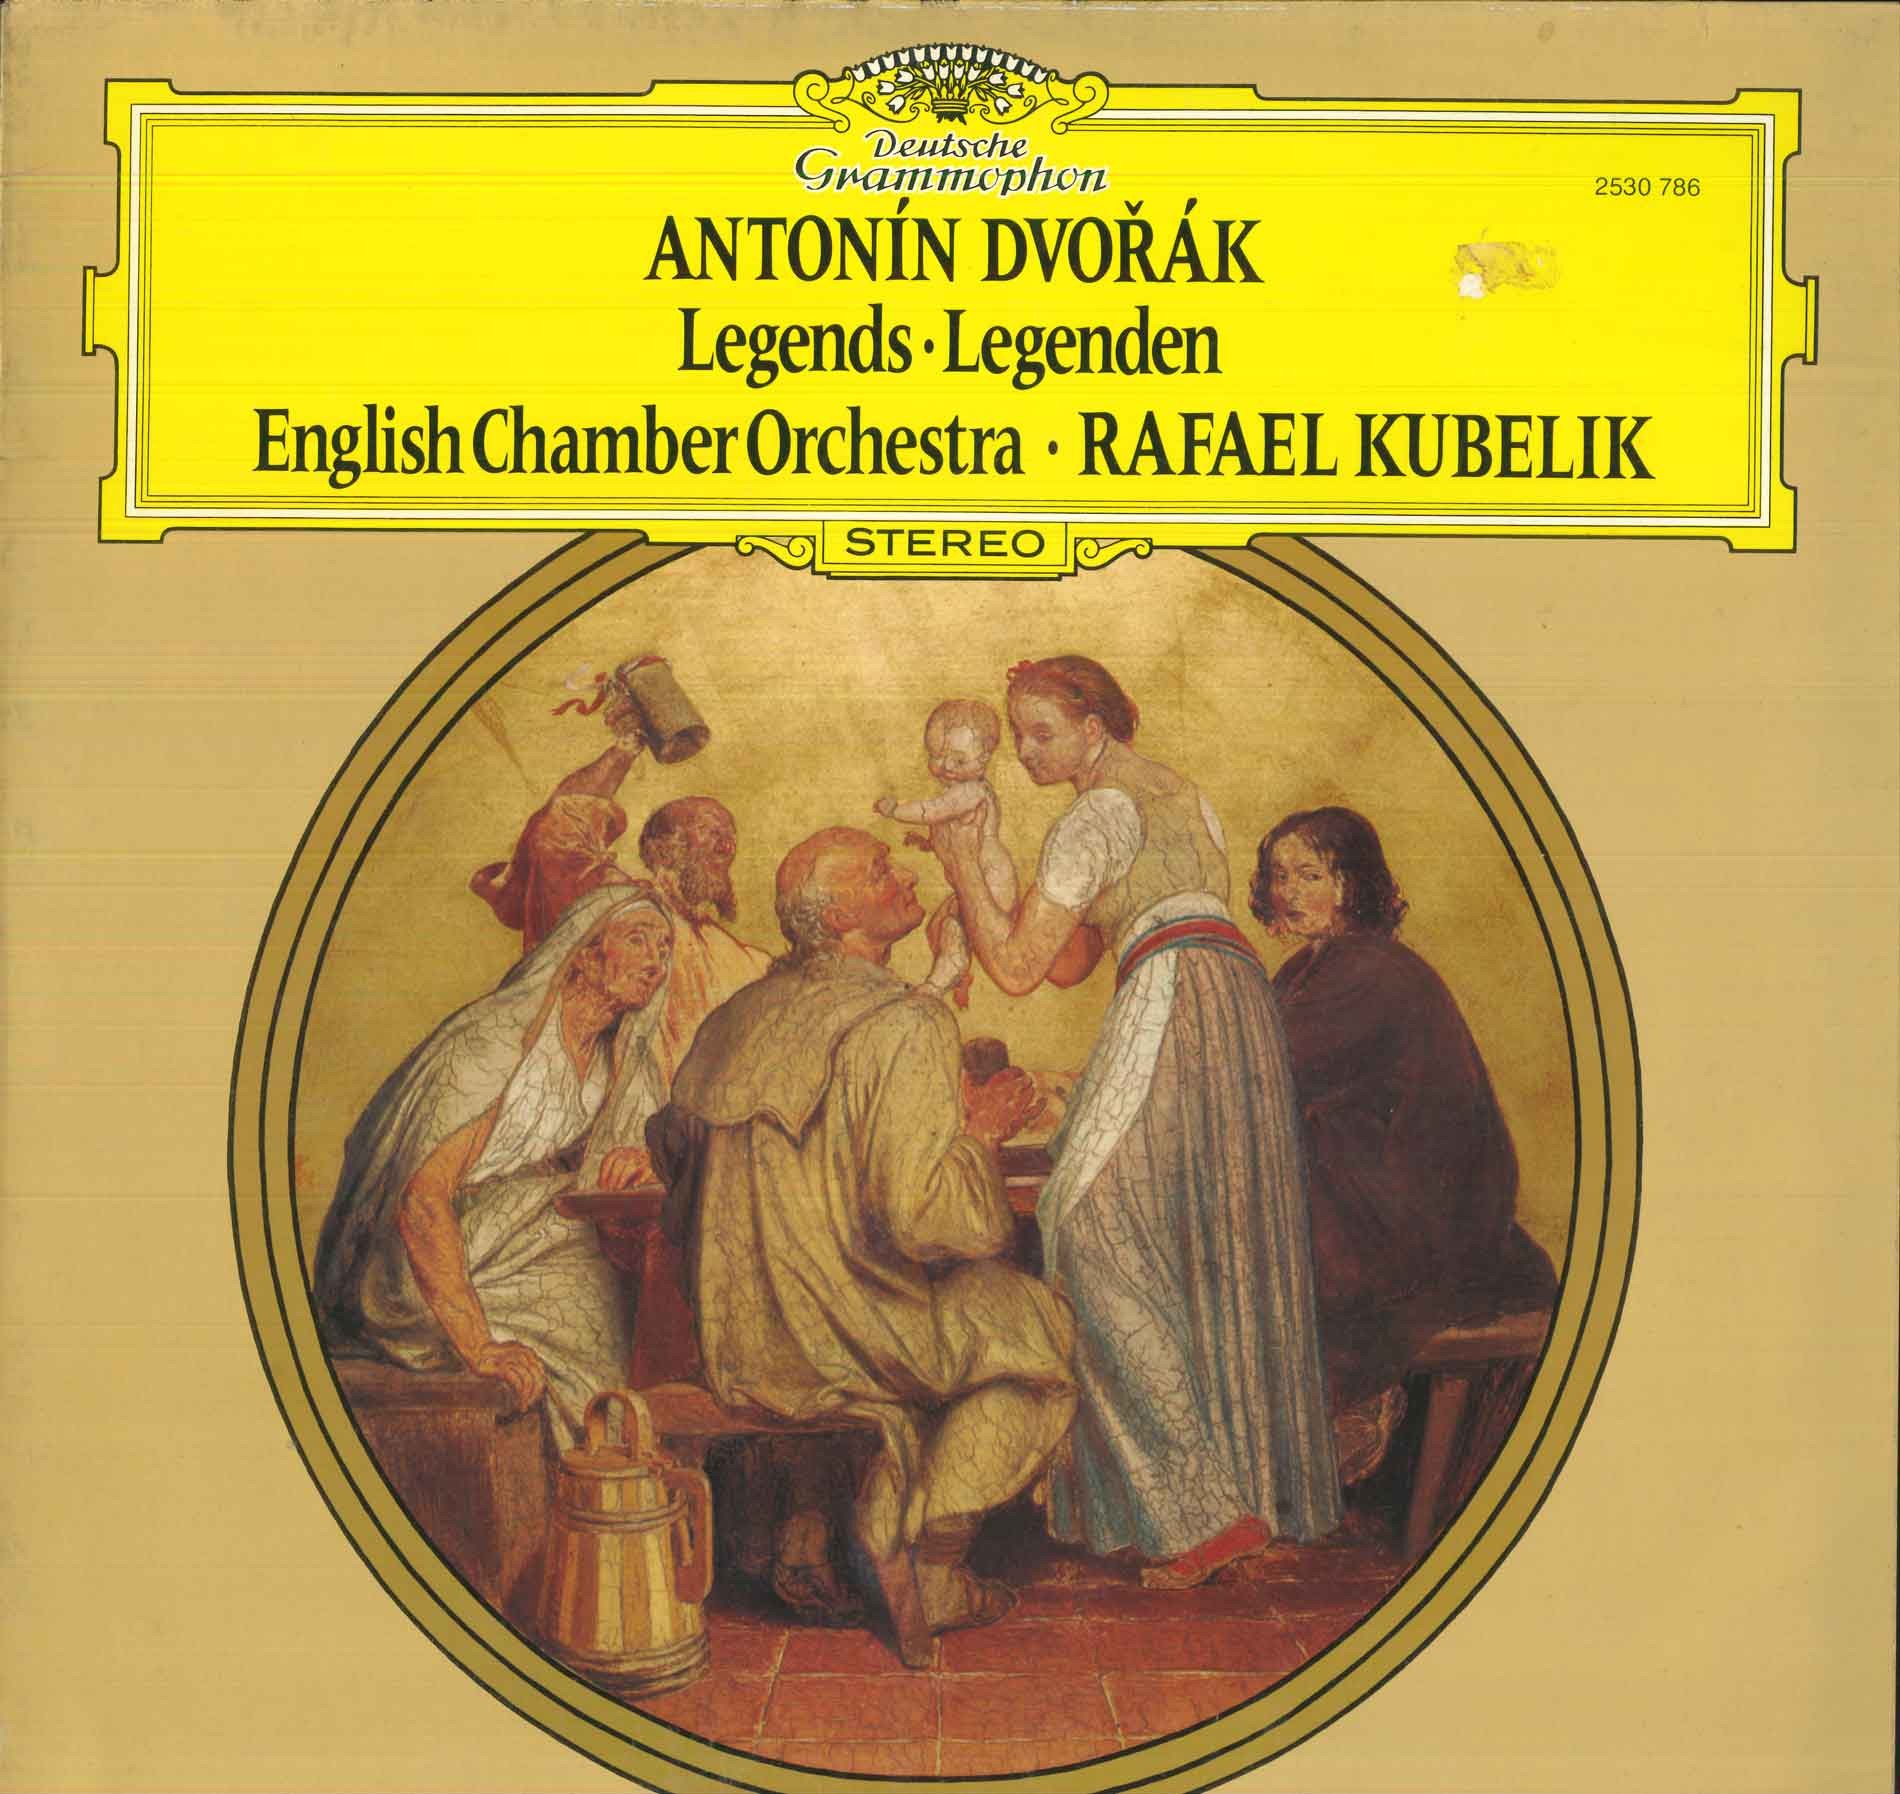 flaccido - Cosa stiamo ascoltando in questo momento - Pagina 37 Dvorak-english-chamber-orchestra-kubelik-lp-vinile-legends-legenden-nuovo-dg